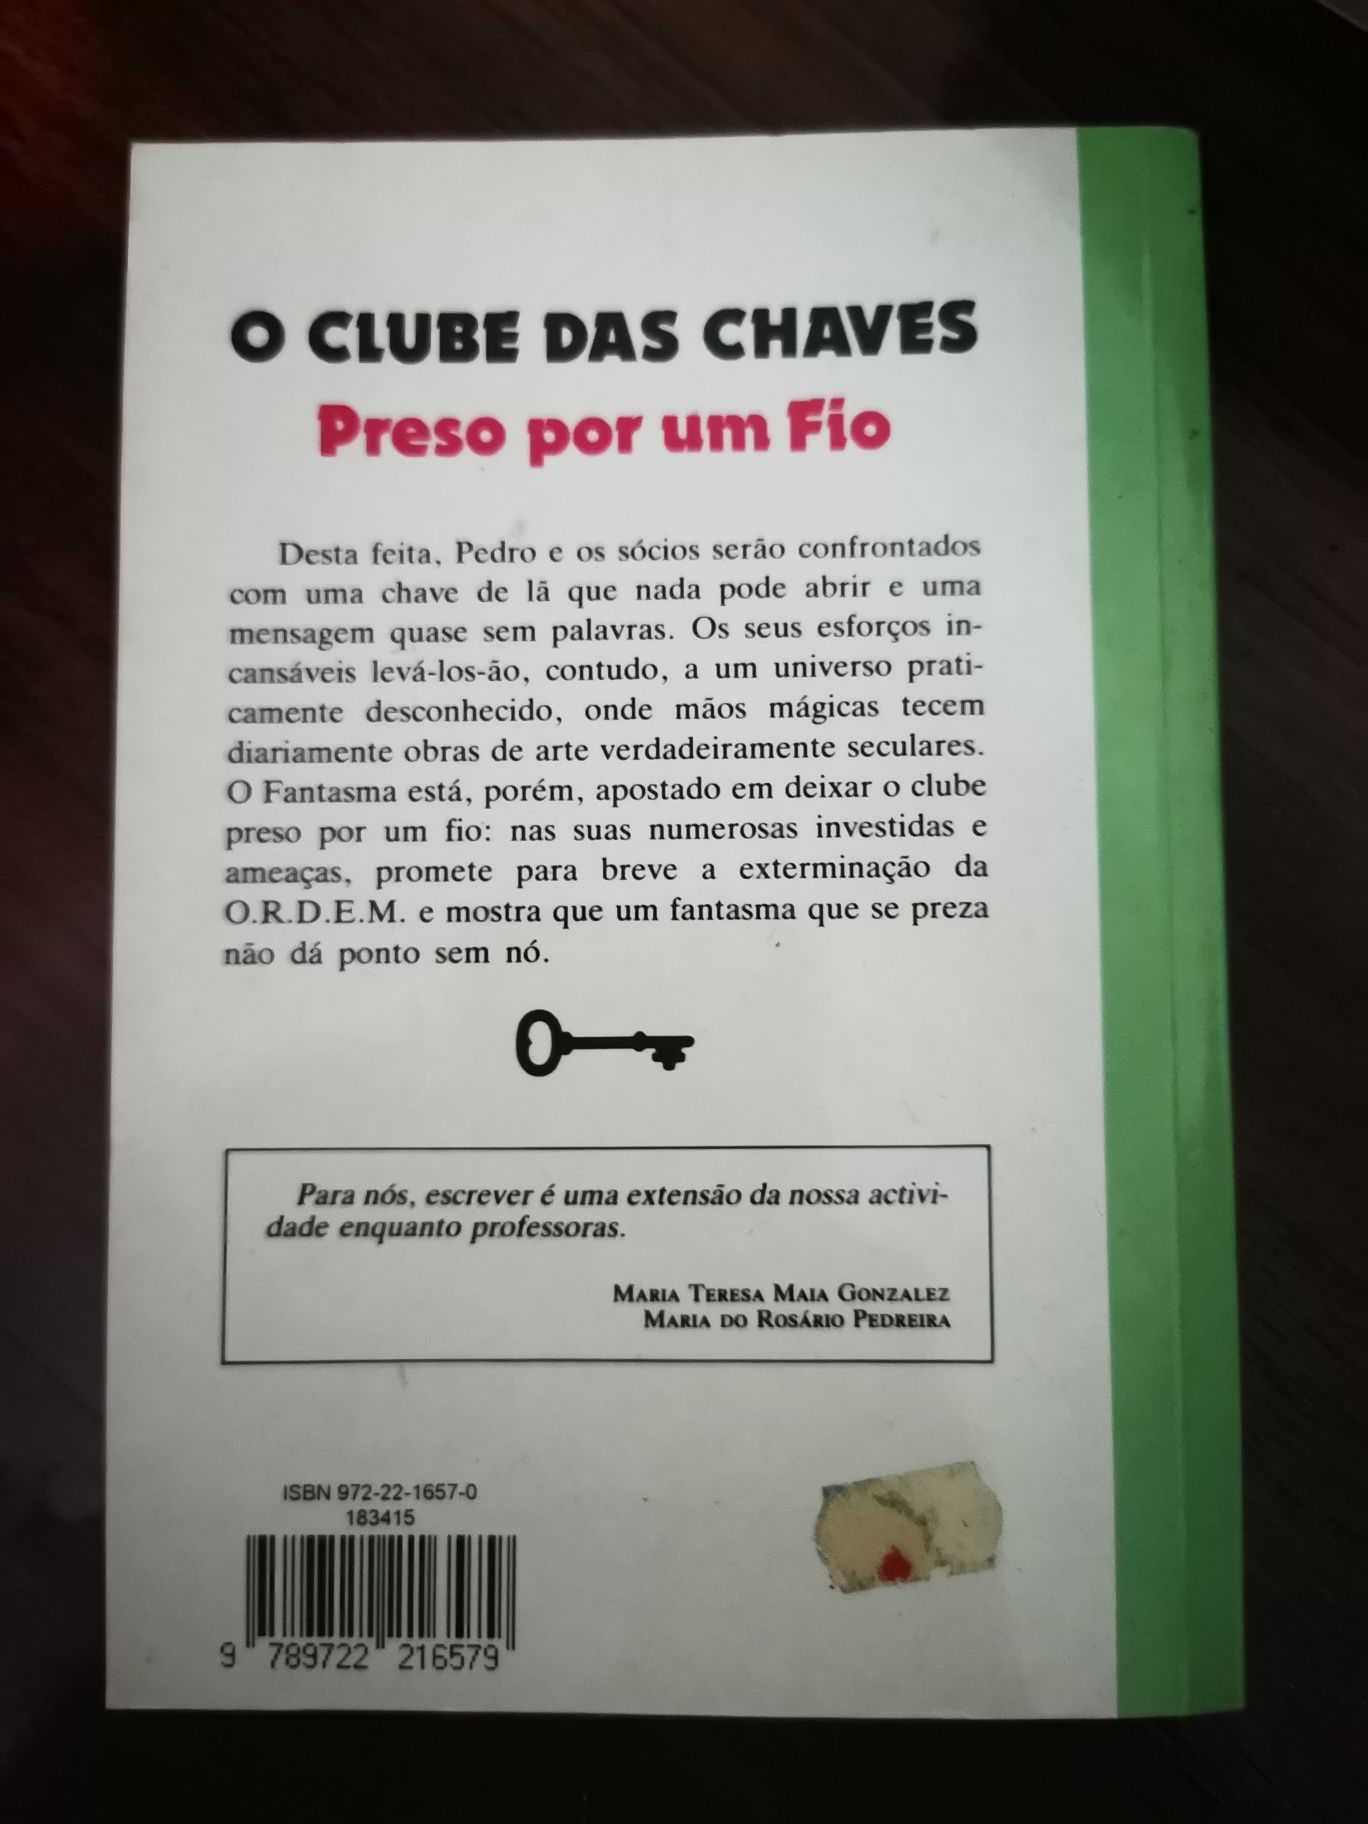 O Clube Das Chaves - Preso por um fio